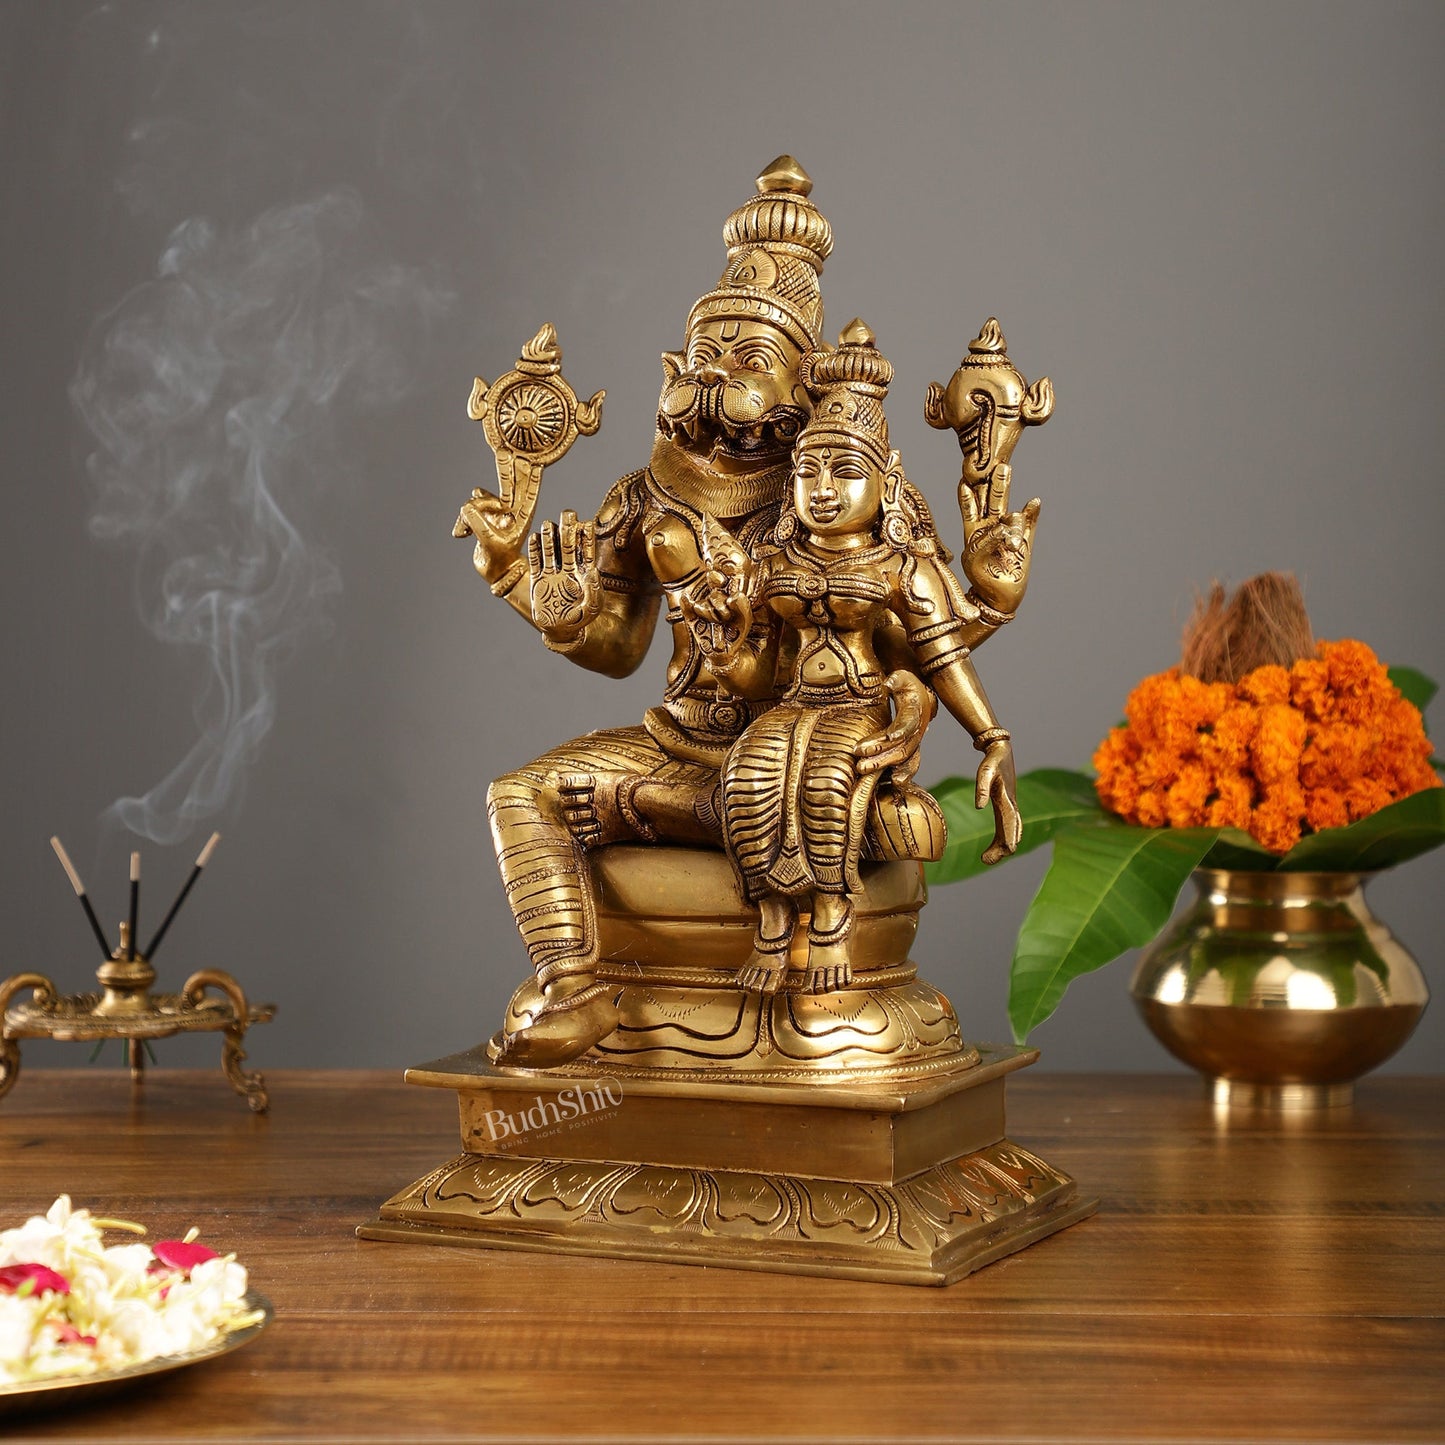 Brass Superfine Narsimha Lakshmi Statue 15" - Budhshiv.com